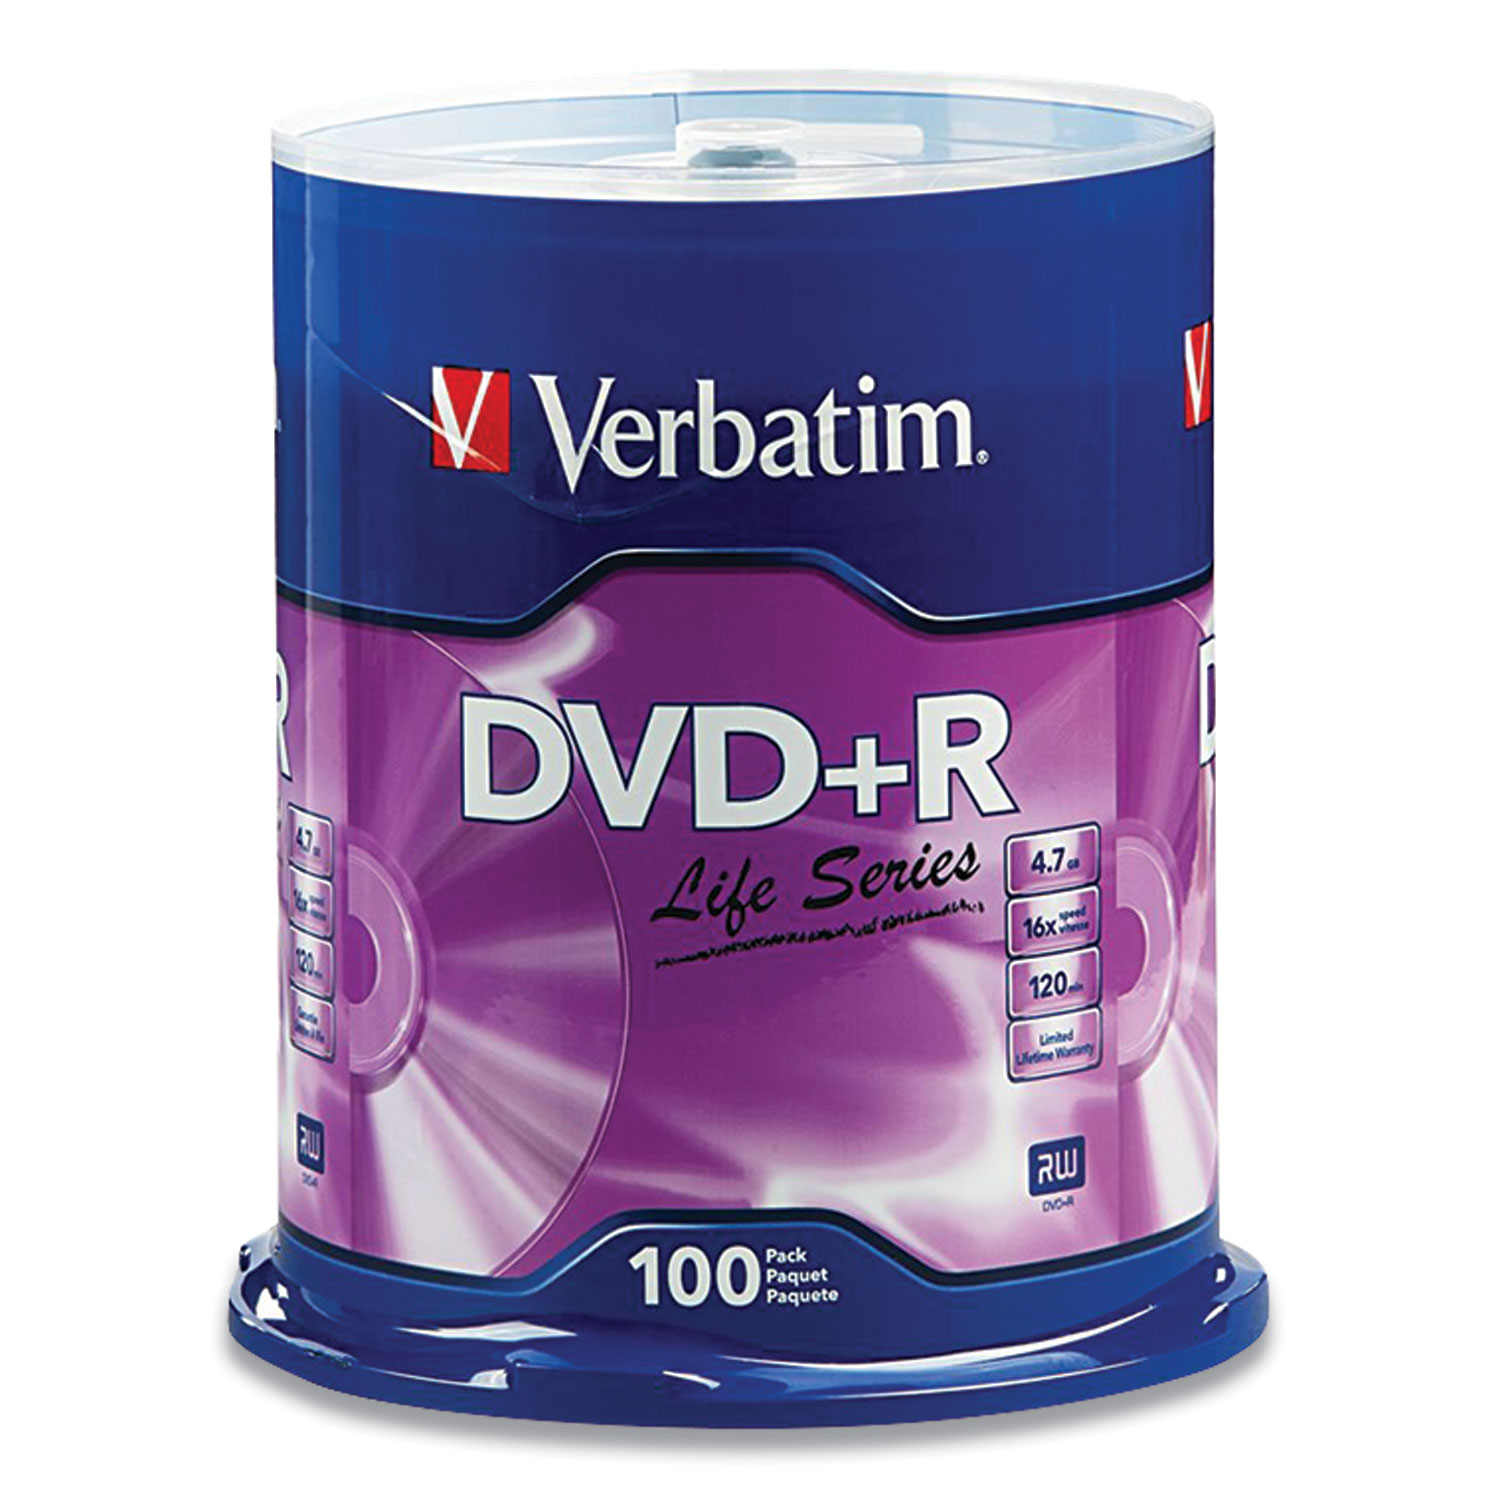  Verbatim 97175 DVD+R LifeSeries Branded Disc, 4.7 GB, 16x, Spindle, Silver, 100/Pack (VER49087) 